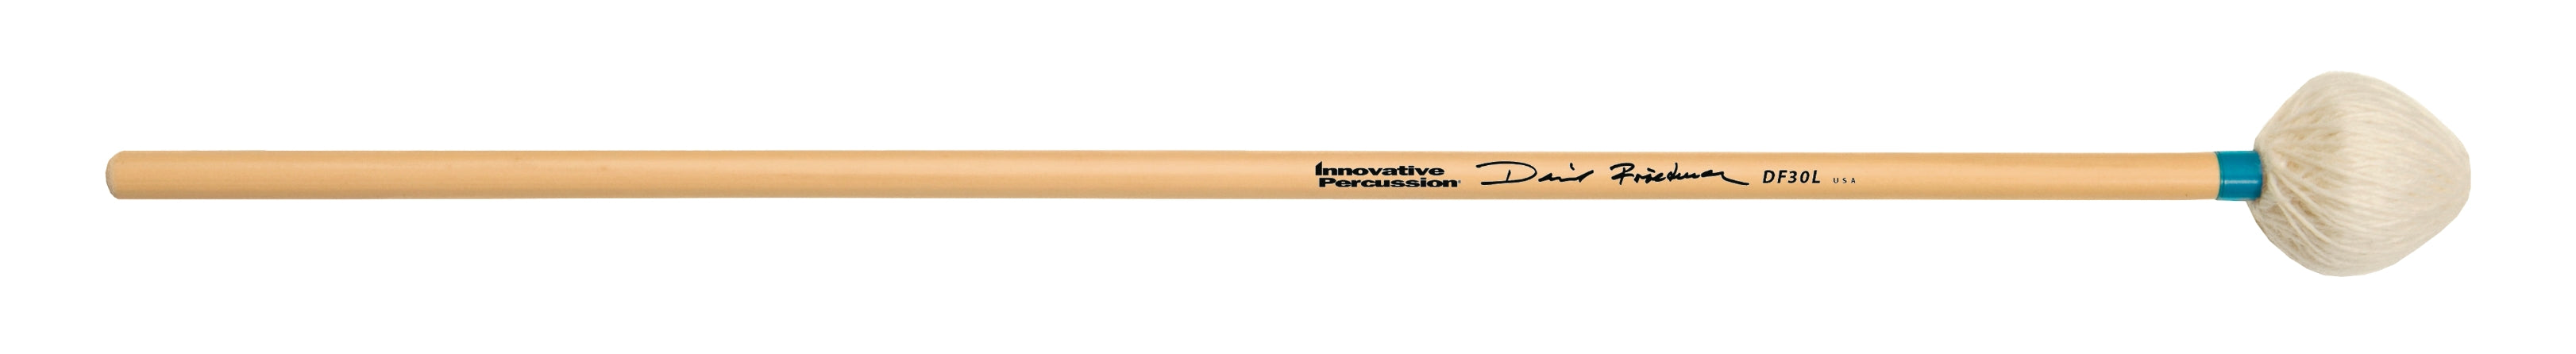 Light Vibraphone Mallets - Ivory Yarn/Light Blue Tape, Innovative Mallets Sticks, Mallets & Brushes Innovative Percussion, Mallets & Brushes halleonard